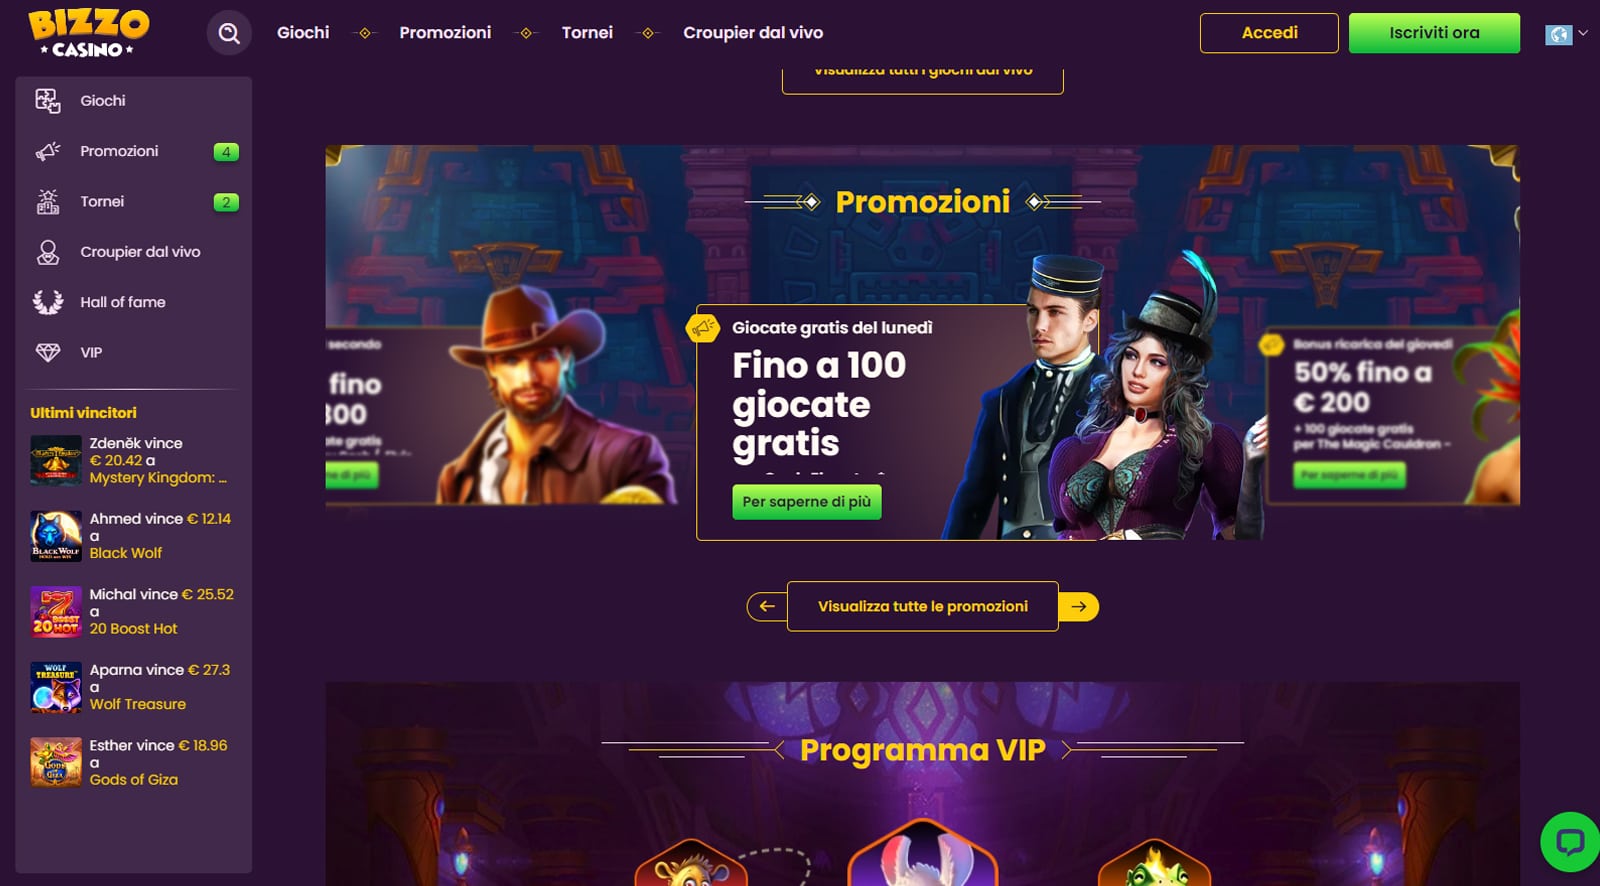 bizzo casino online